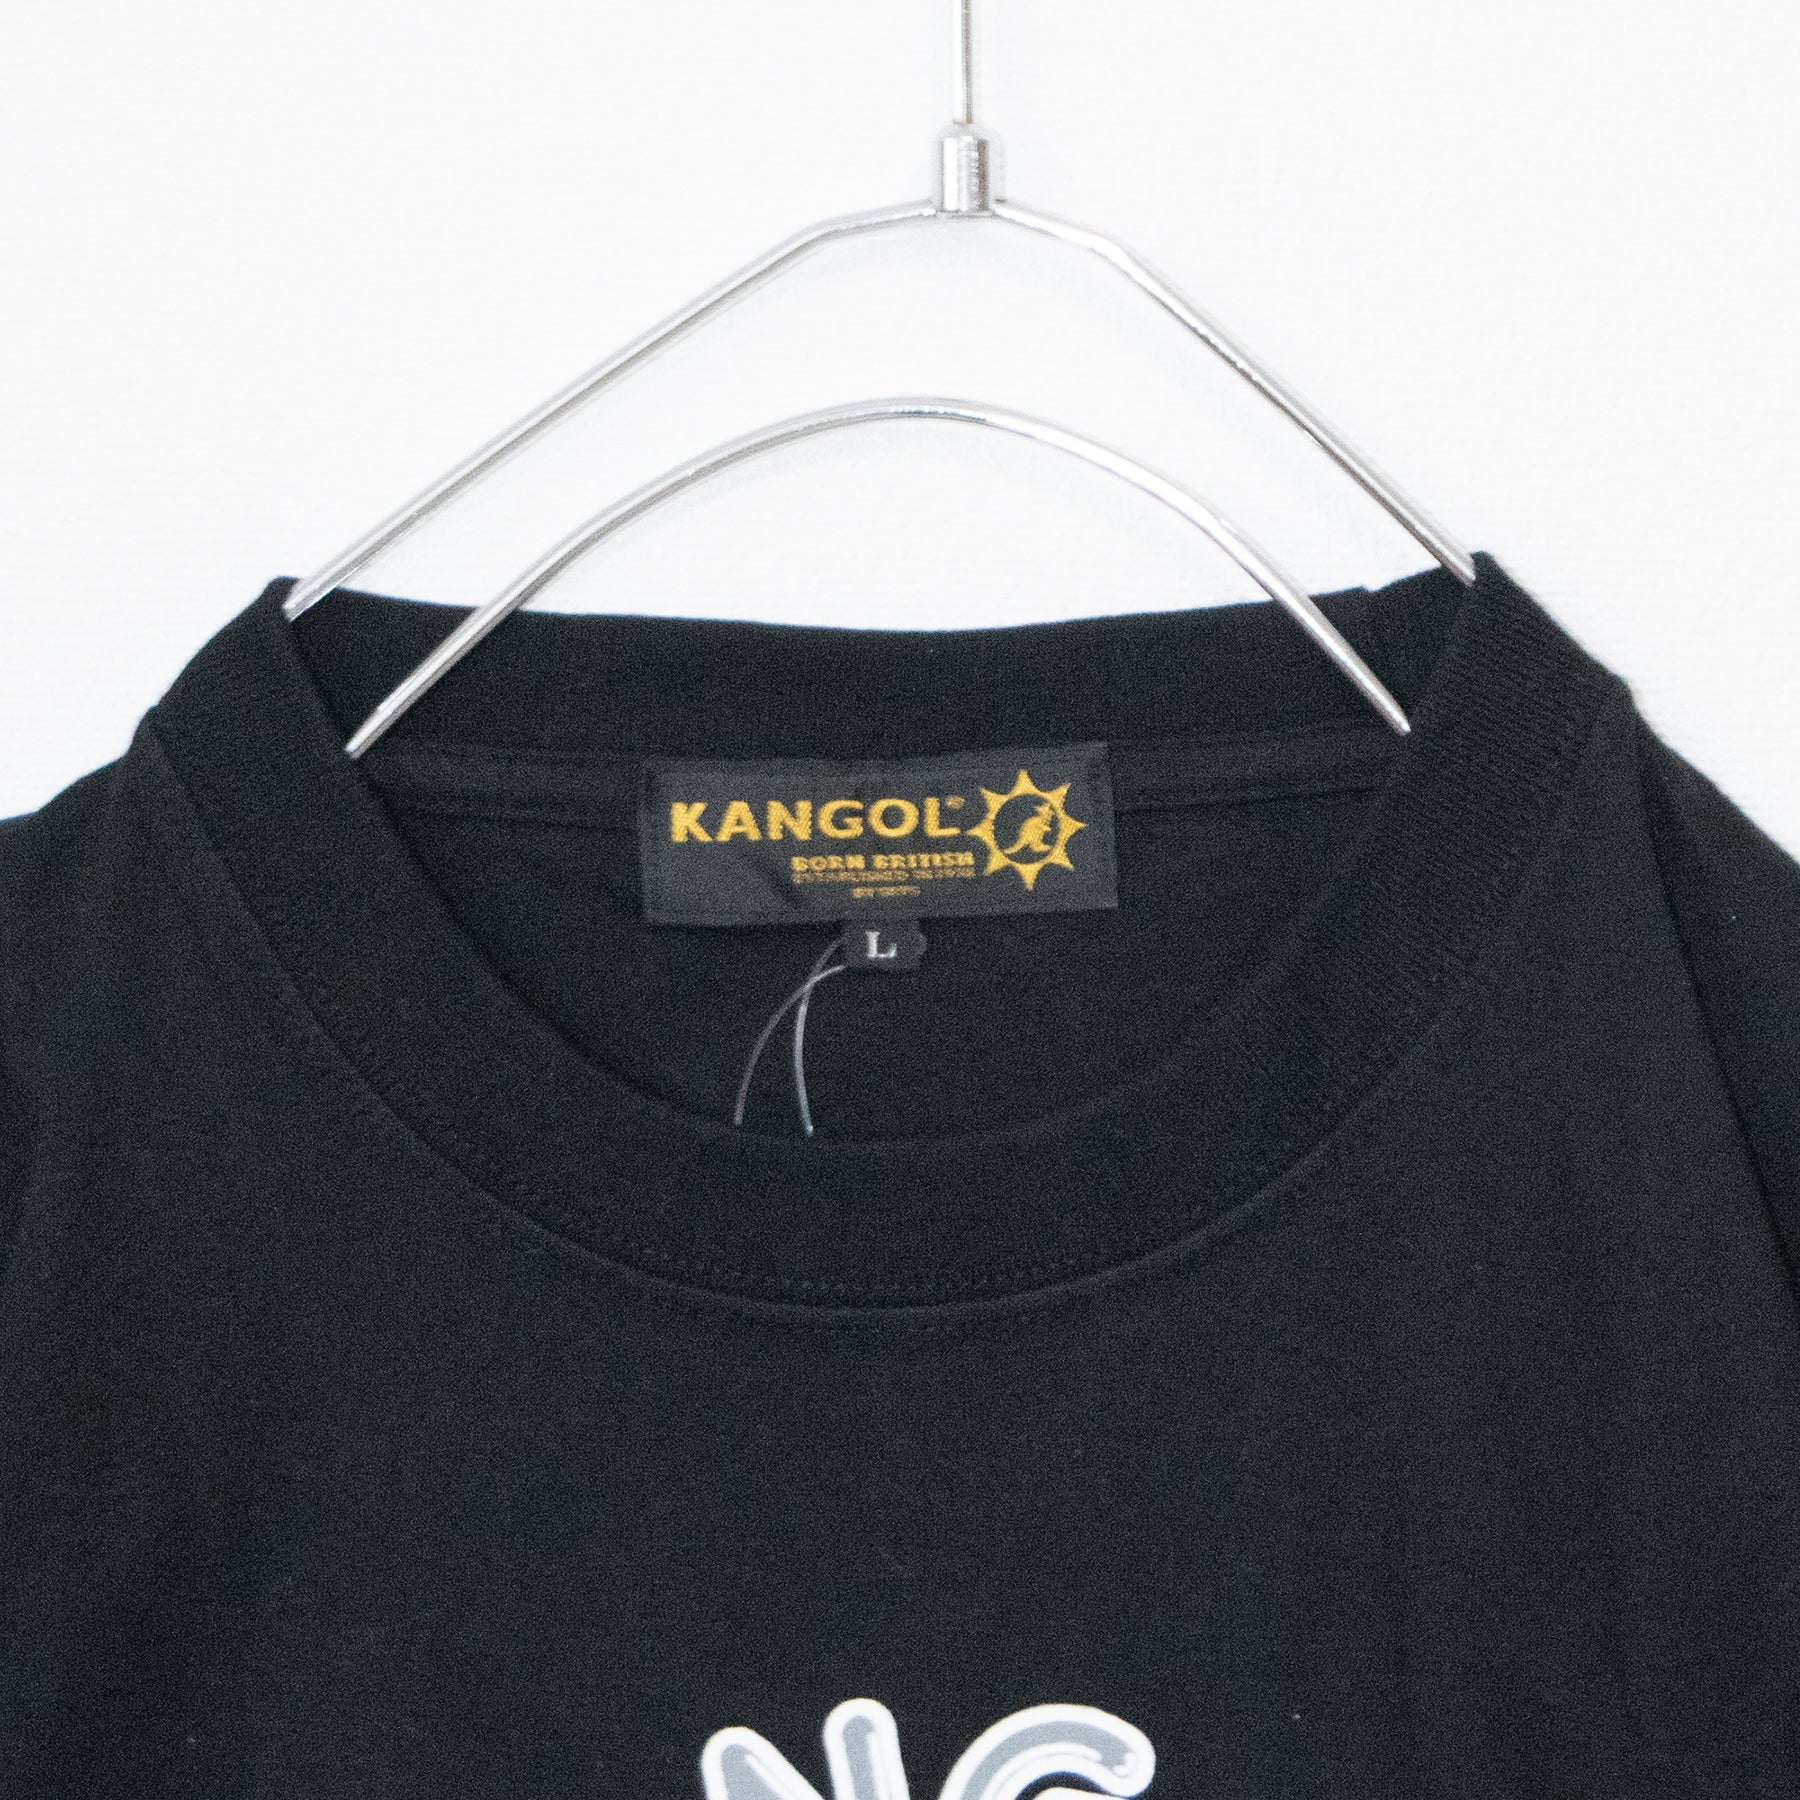 KANGOL Music Circle S/S T-shirt Black - YOUAREMYPOISON